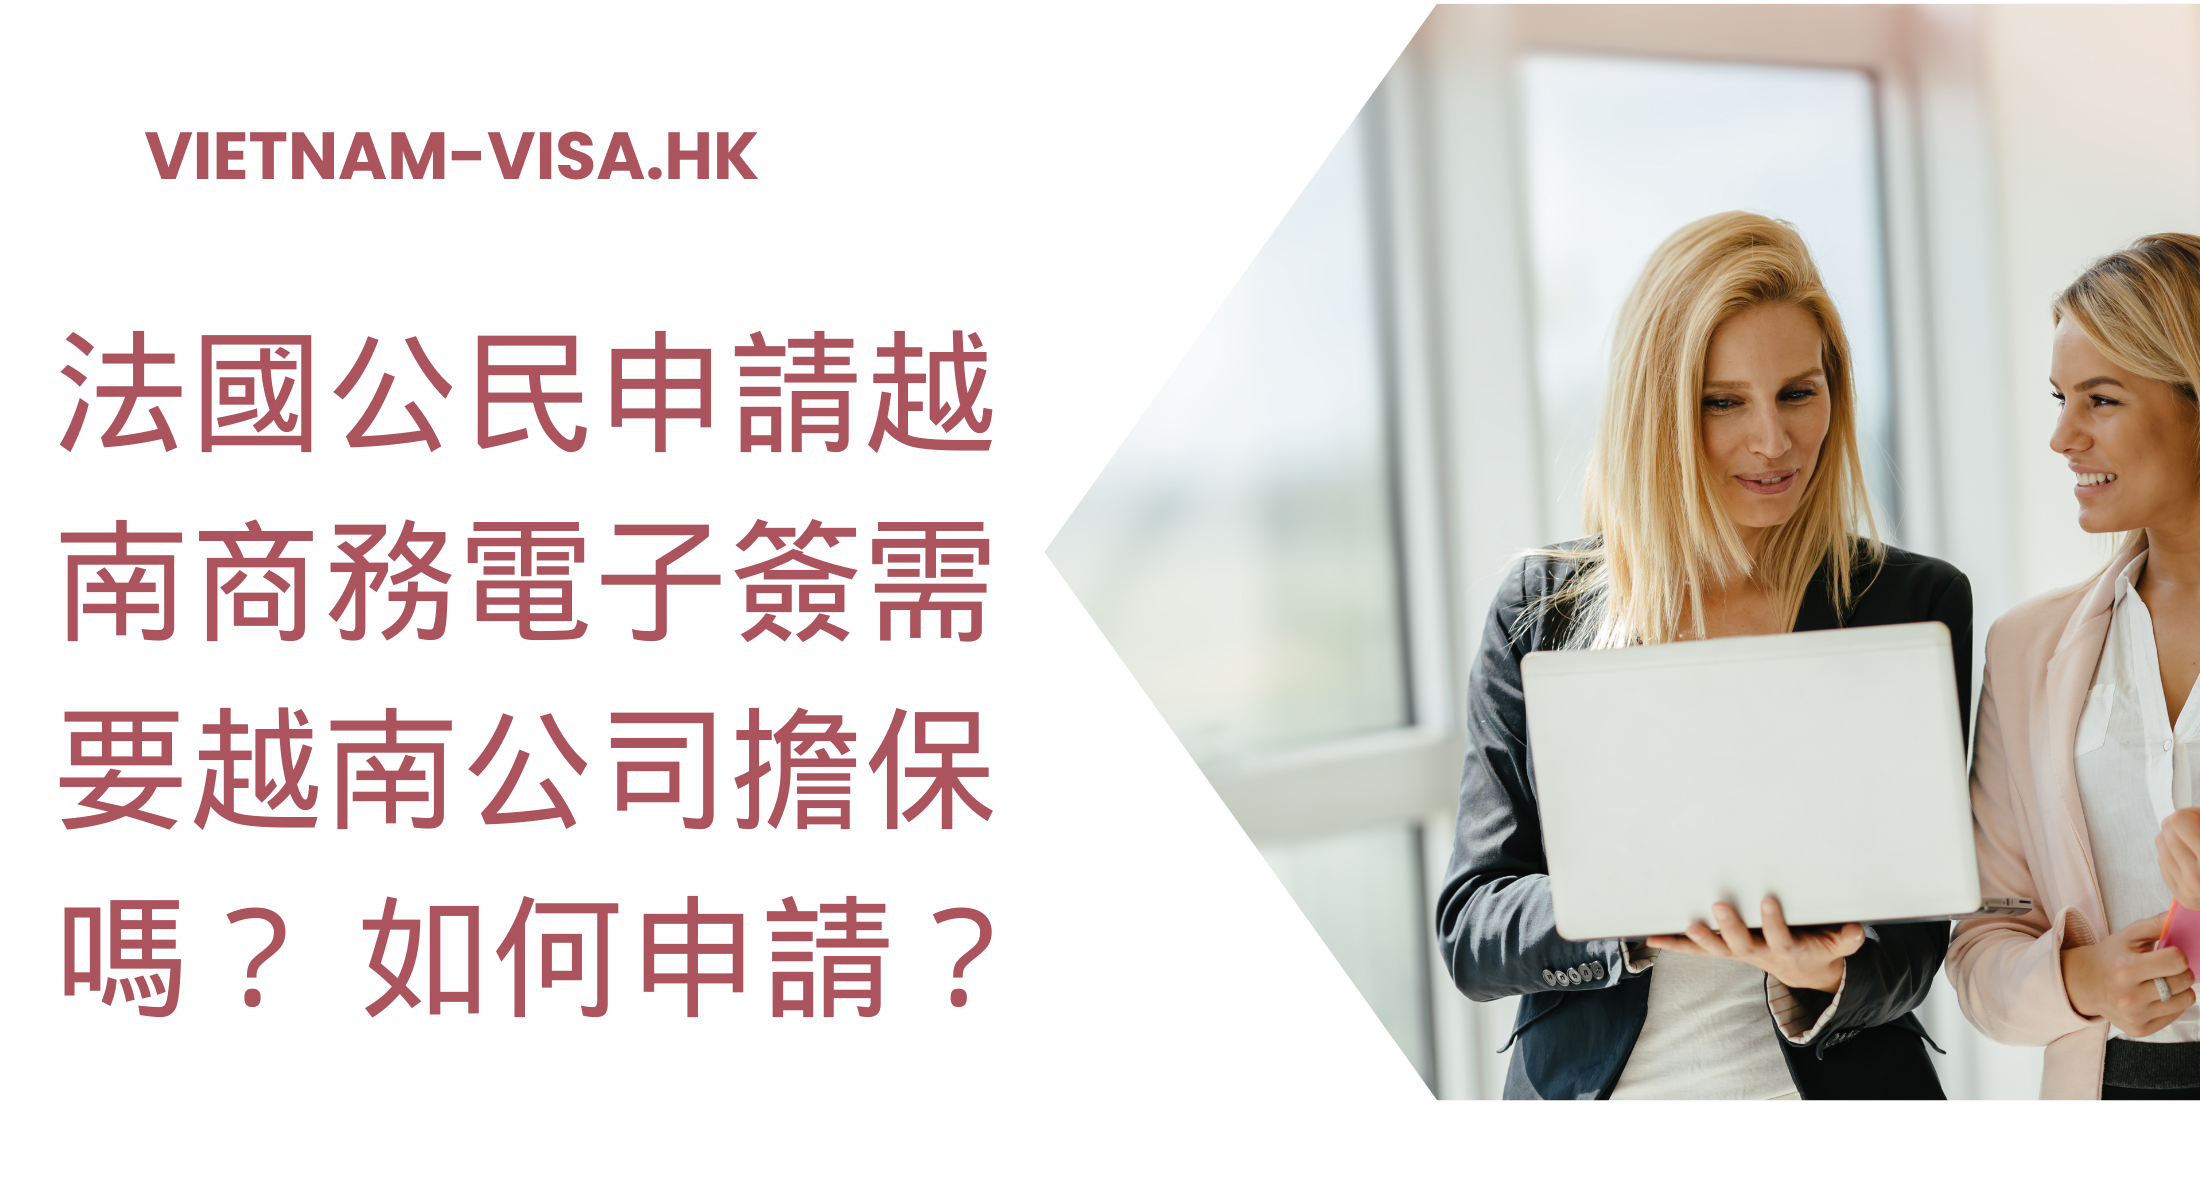 法國公民申請越南商務電子簽需要越南公司擔保嗎？ 如何申請？